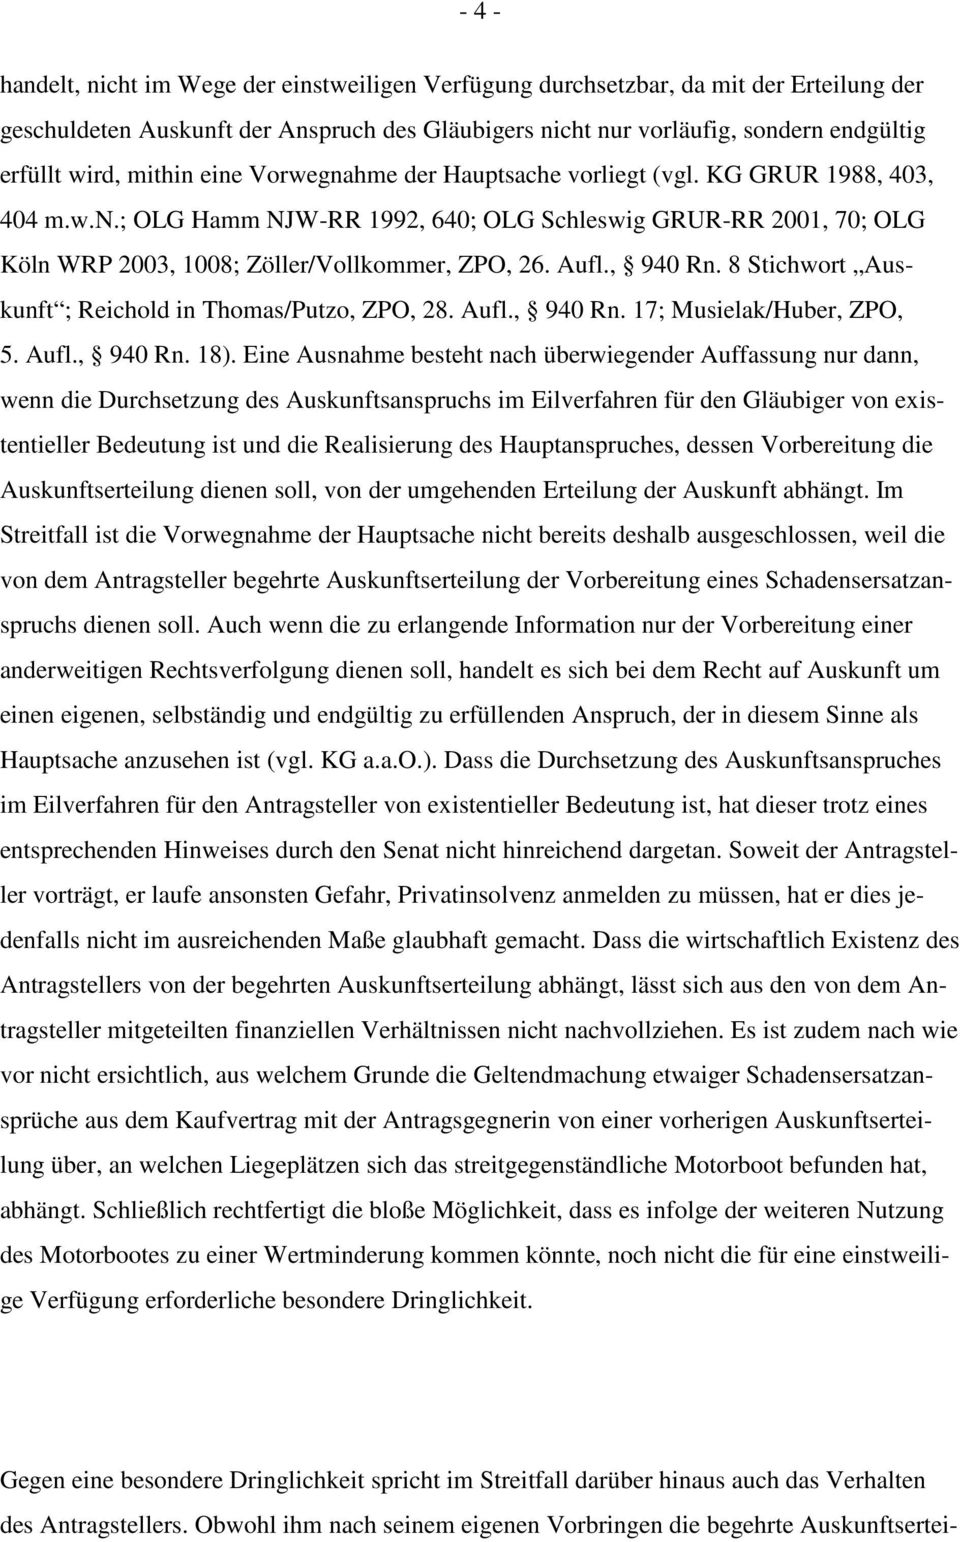 Aufl., 940 Rn. 8 Stichwort Auskunft ; Reichold in Thomas/Putzo, ZPO, 28. Aufl., 940 Rn. 17; Musielak/Huber, ZPO, 5. Aufl., 940 Rn. 18).